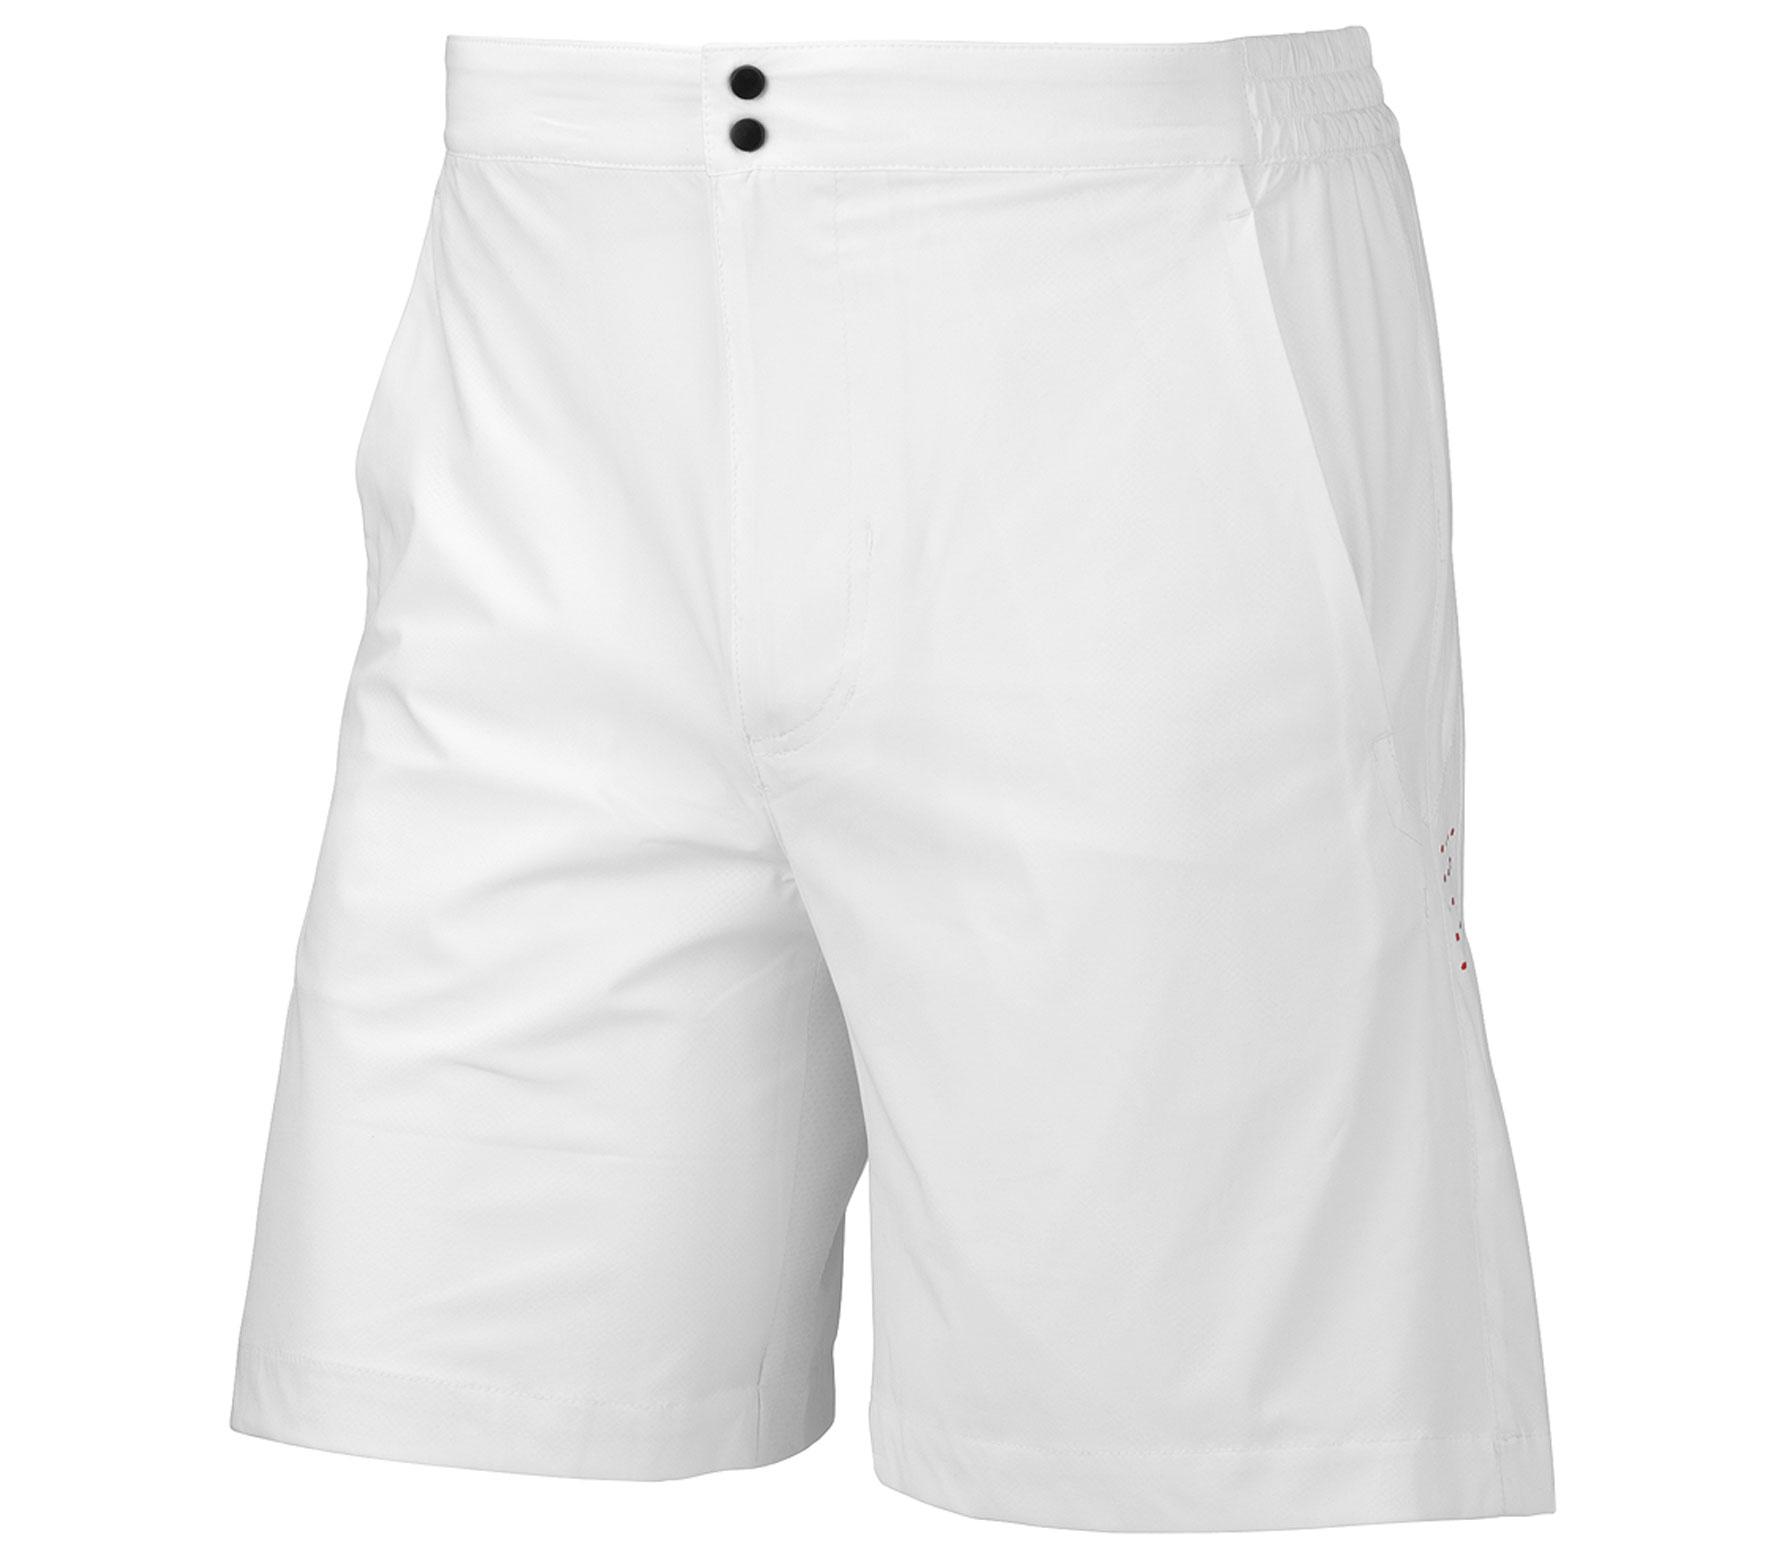 Foto Head - Miami pantalón corto blanco - L foto 460118